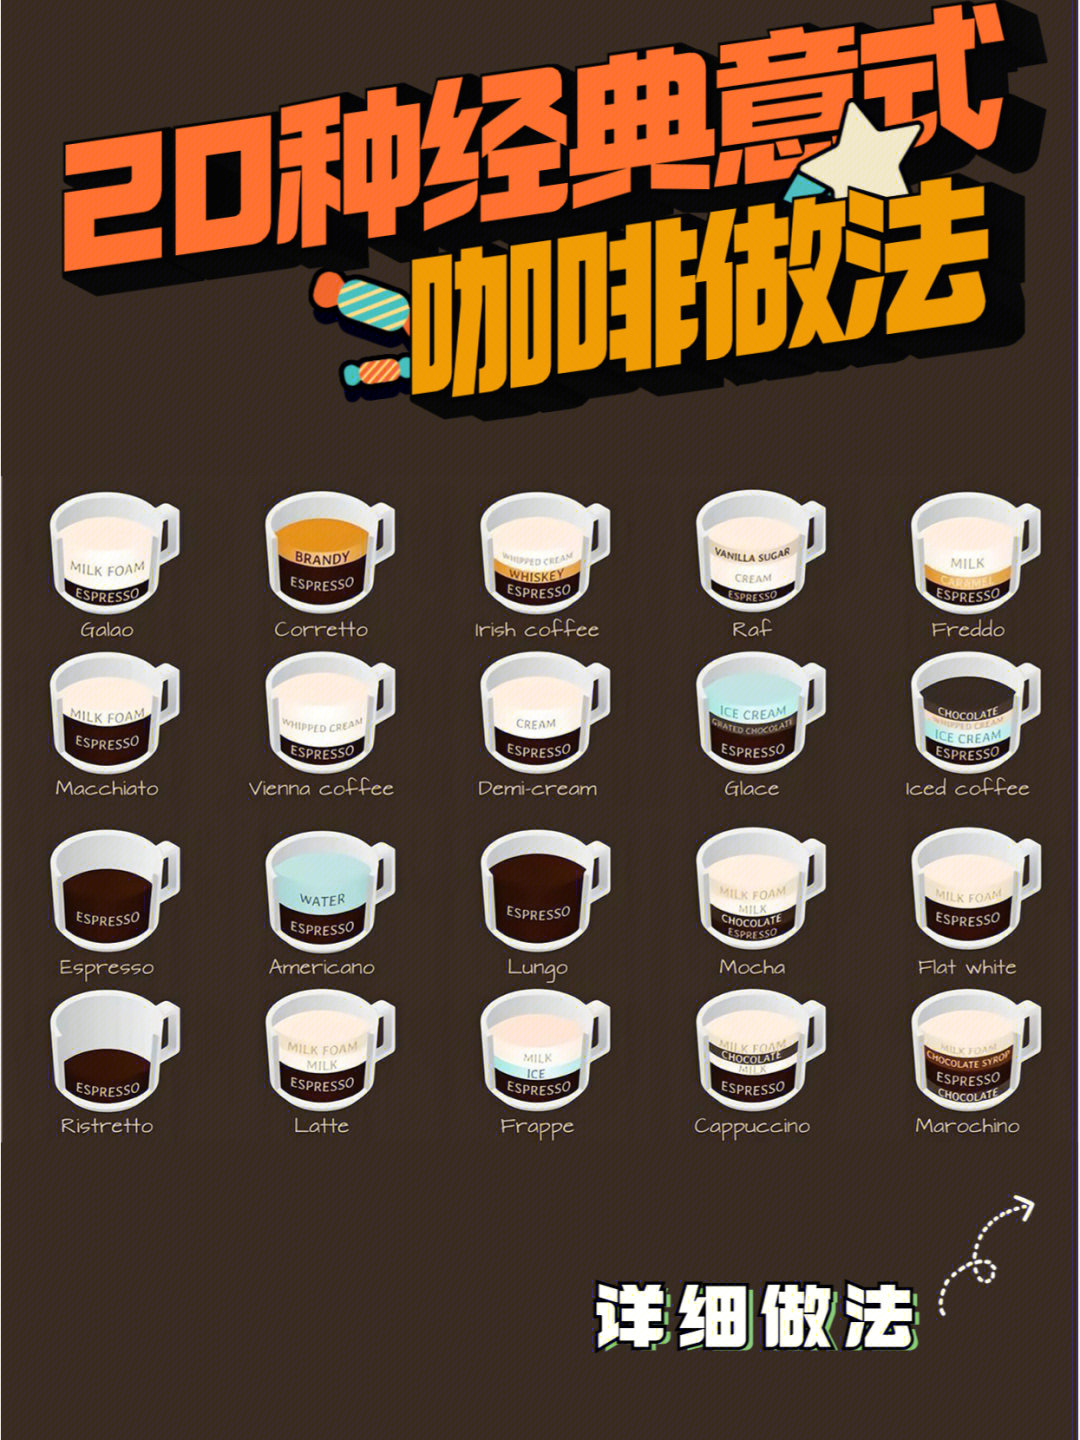 20种经典意式咖啡配比